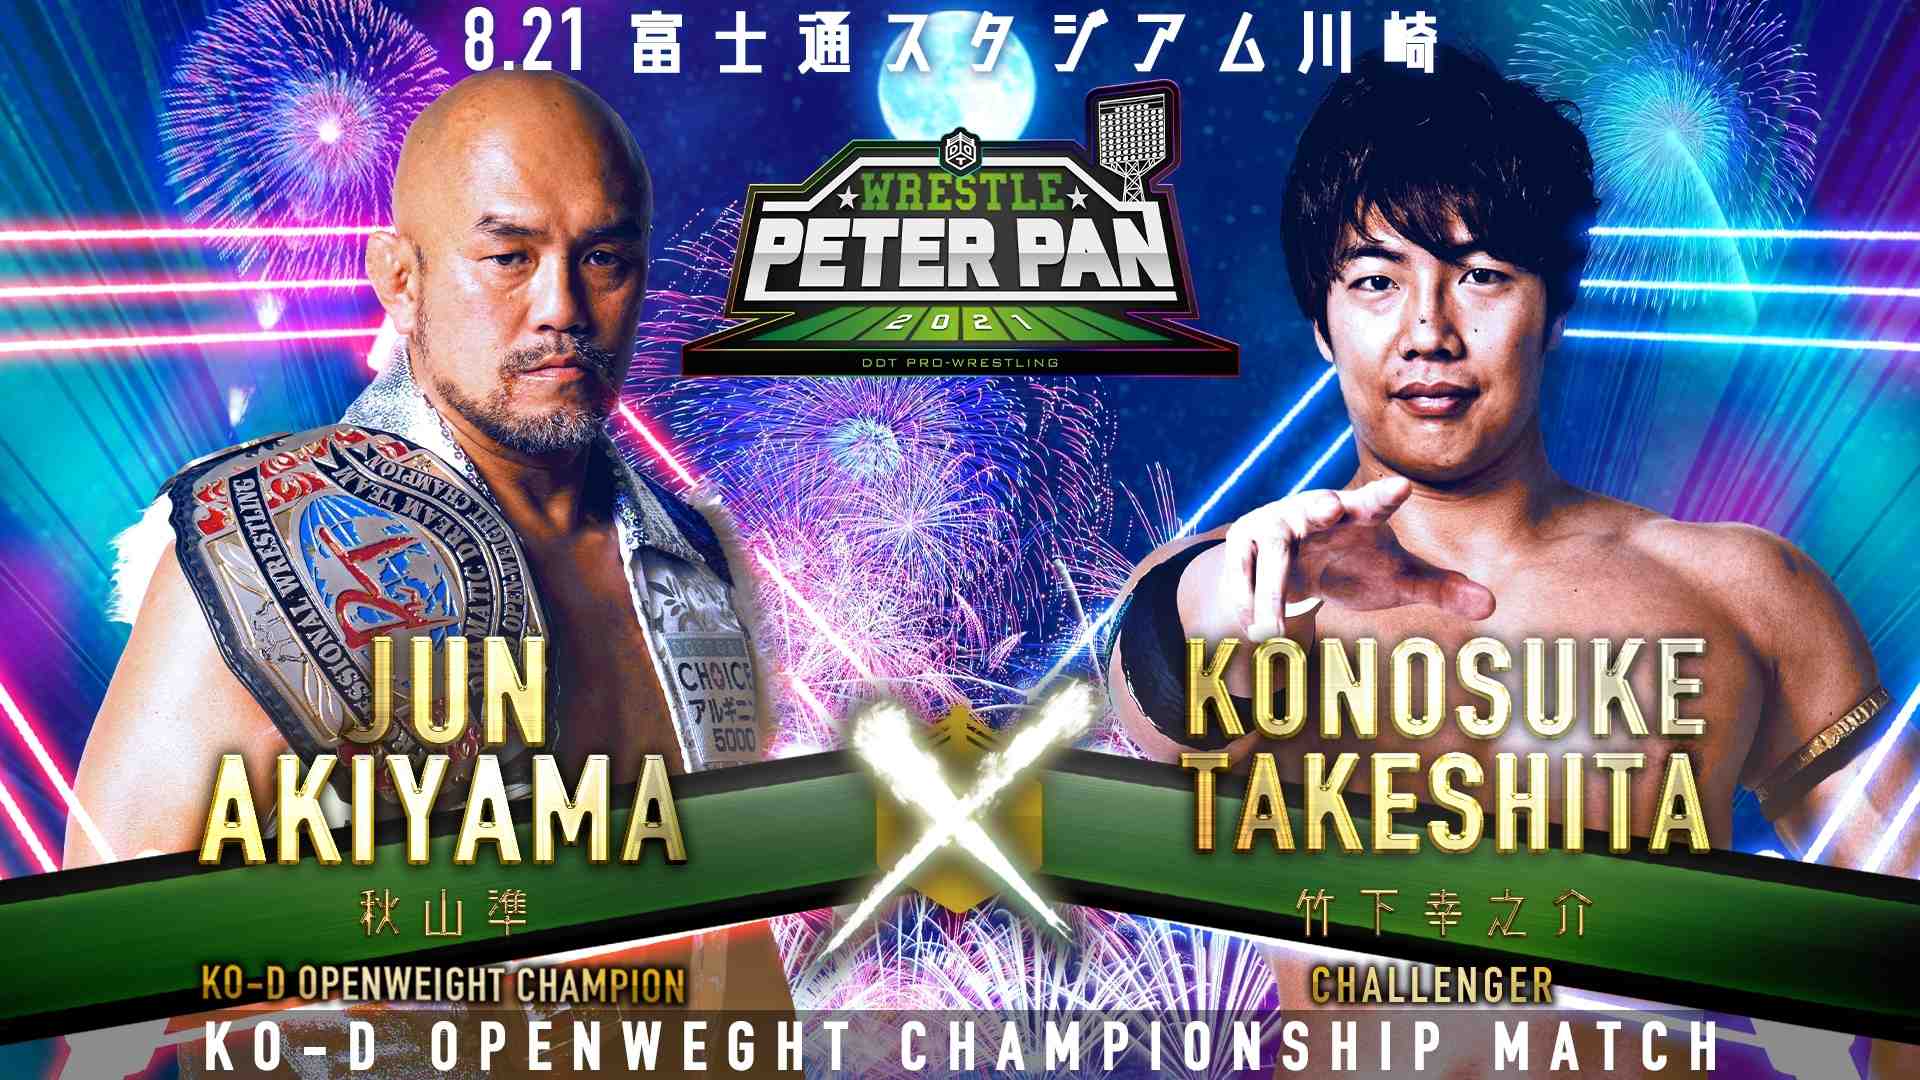 akiyama vs takeshita wrestle peter pan 2021 compressed 3